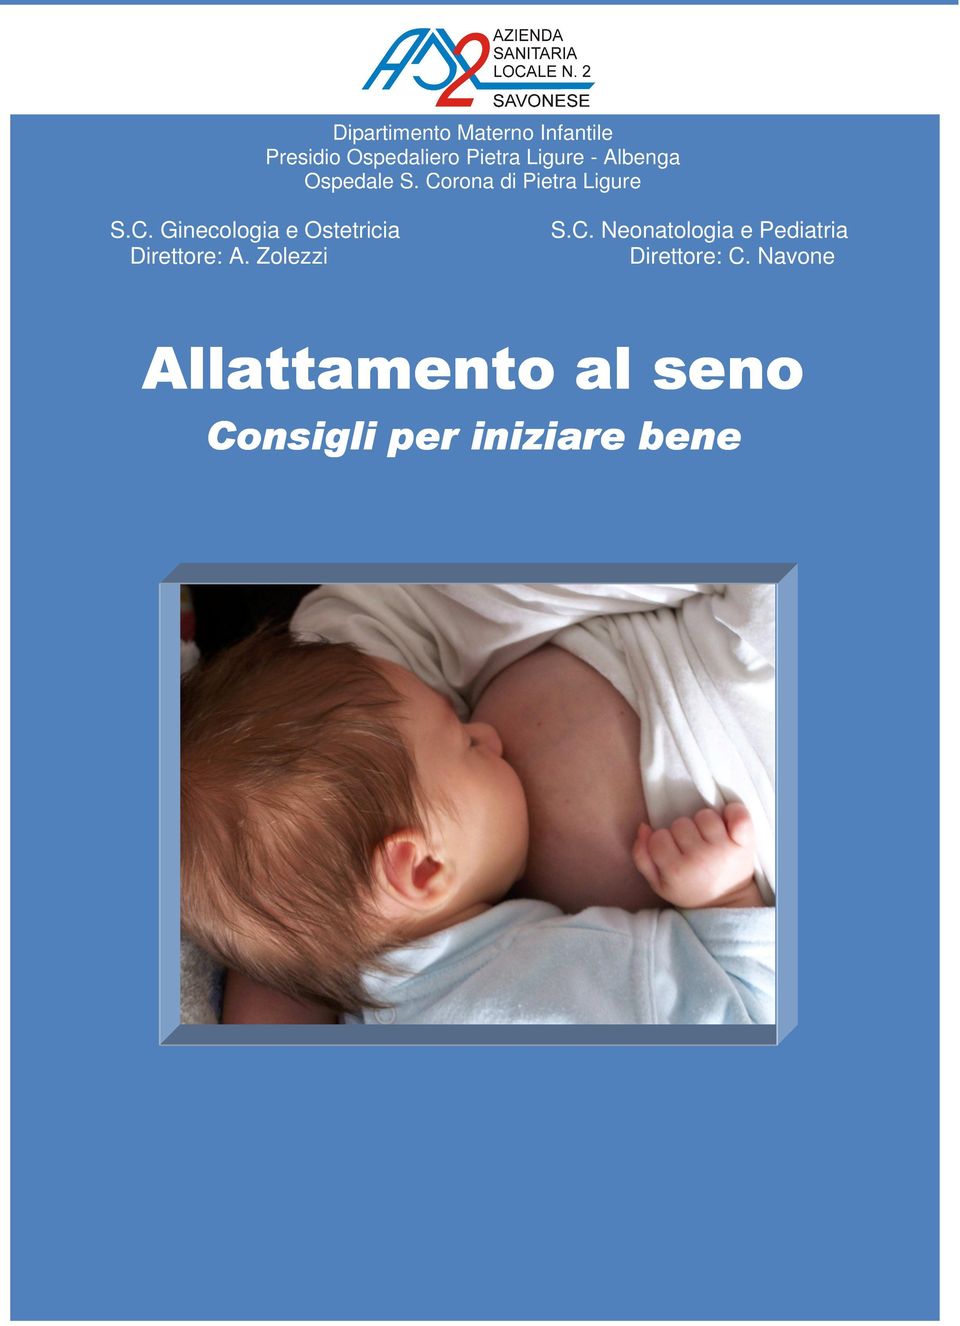 Zolezzi S.C. Neonatologia e Pediatria Direttore: C.